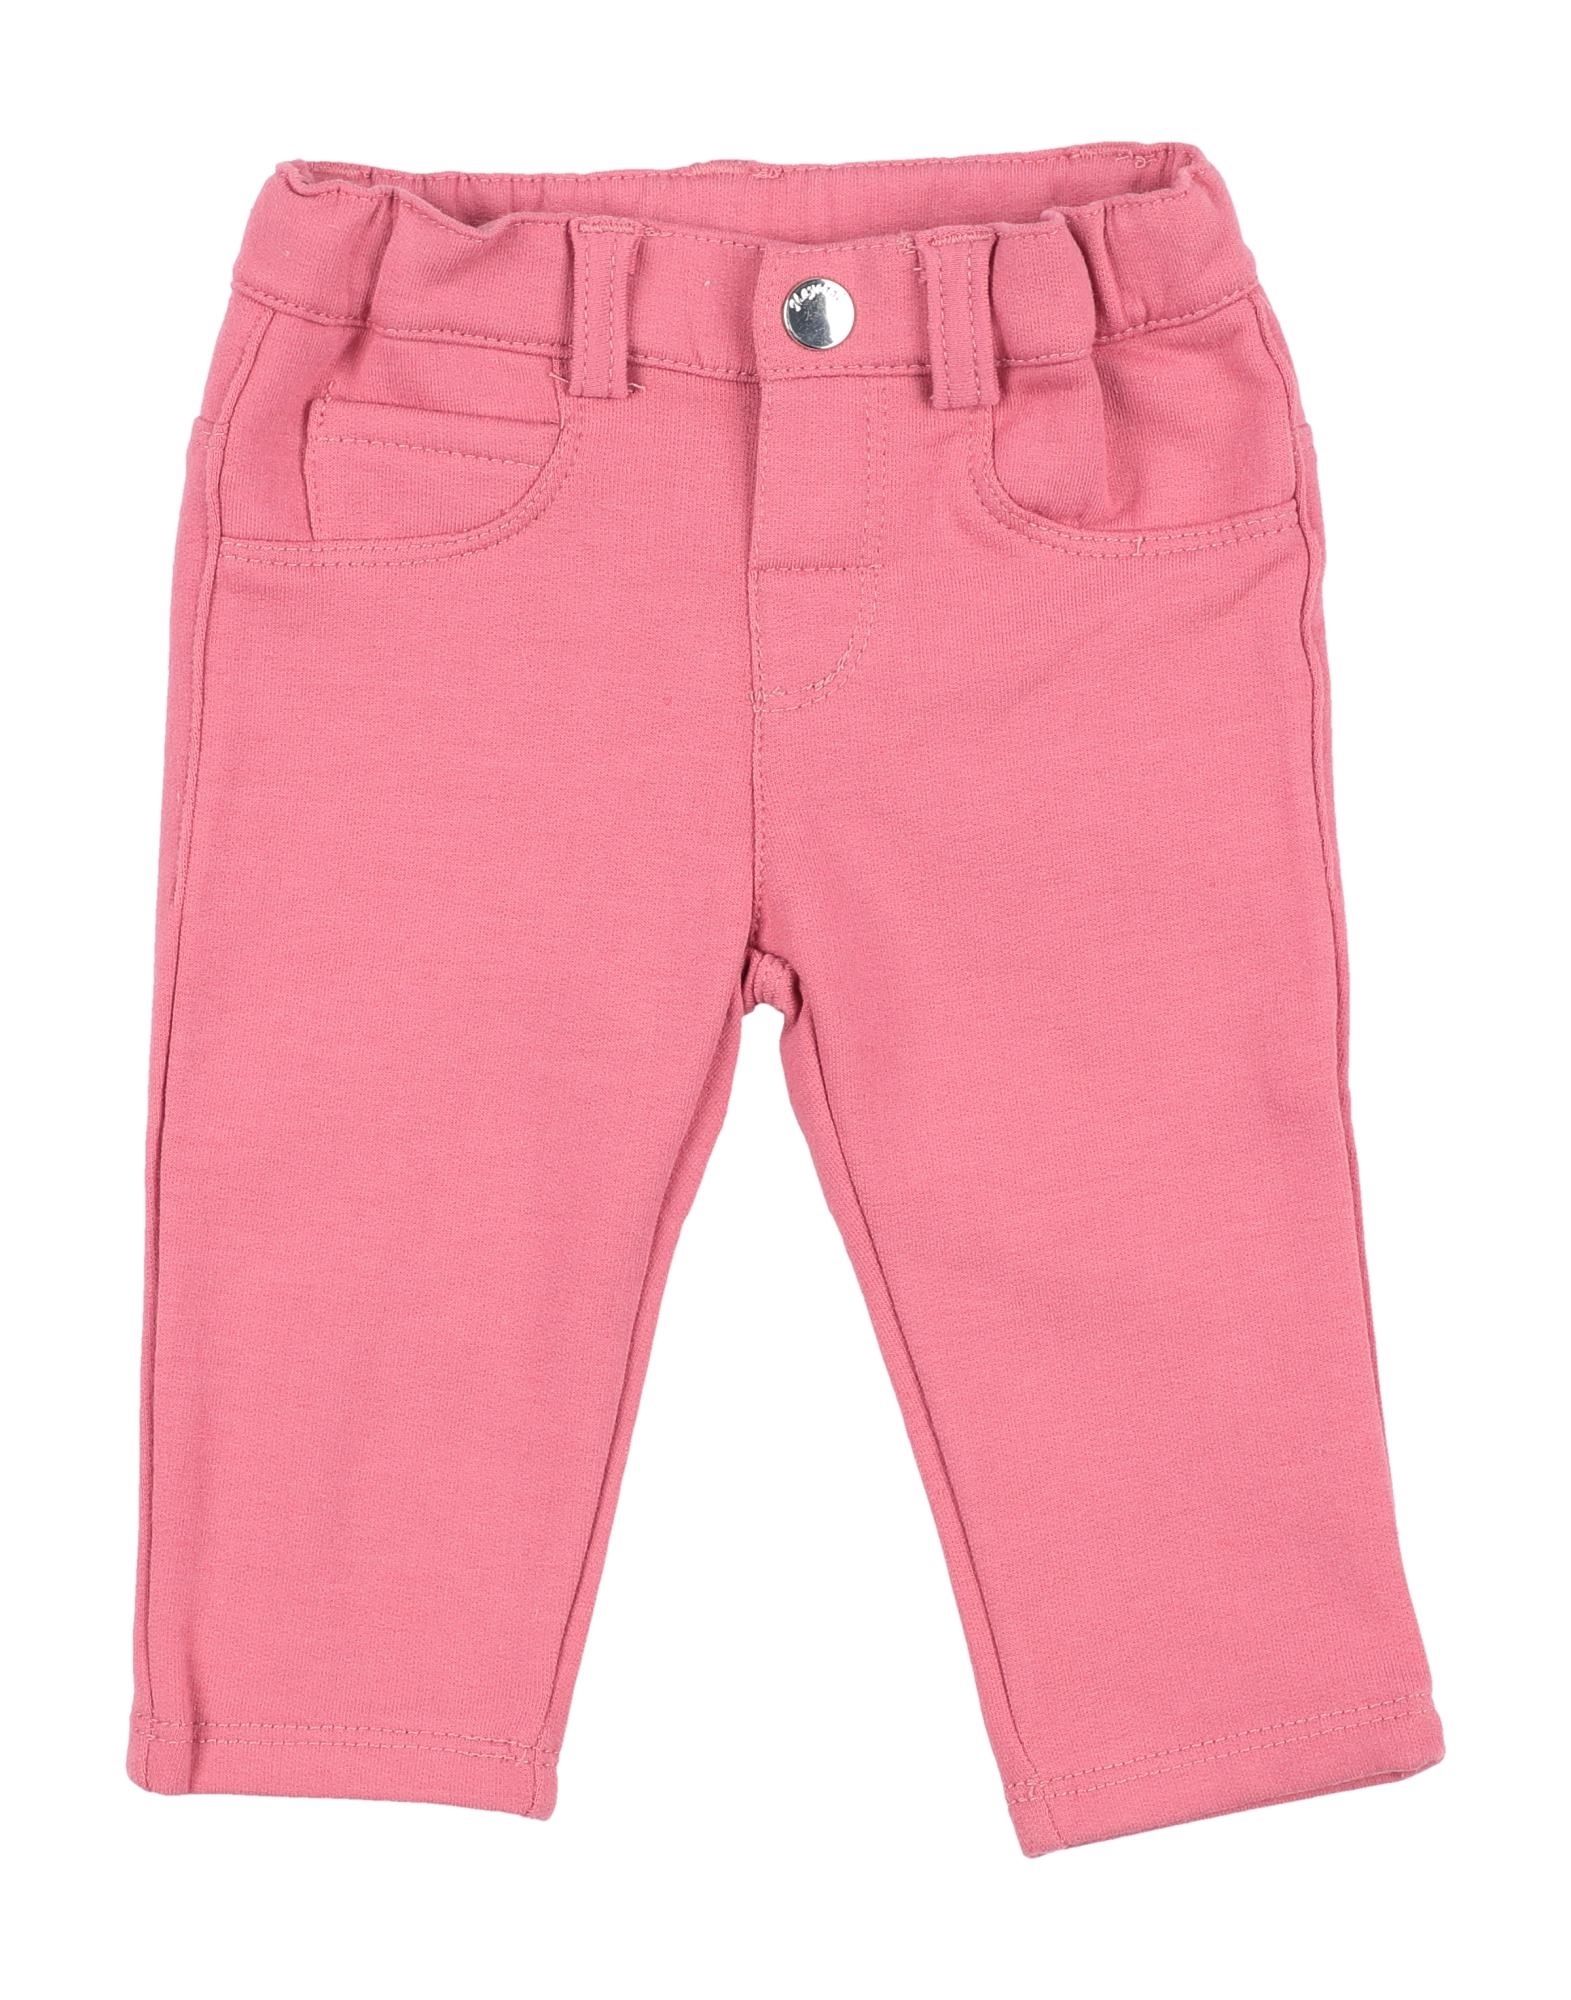 Mayoral Kids' Pants In Pink